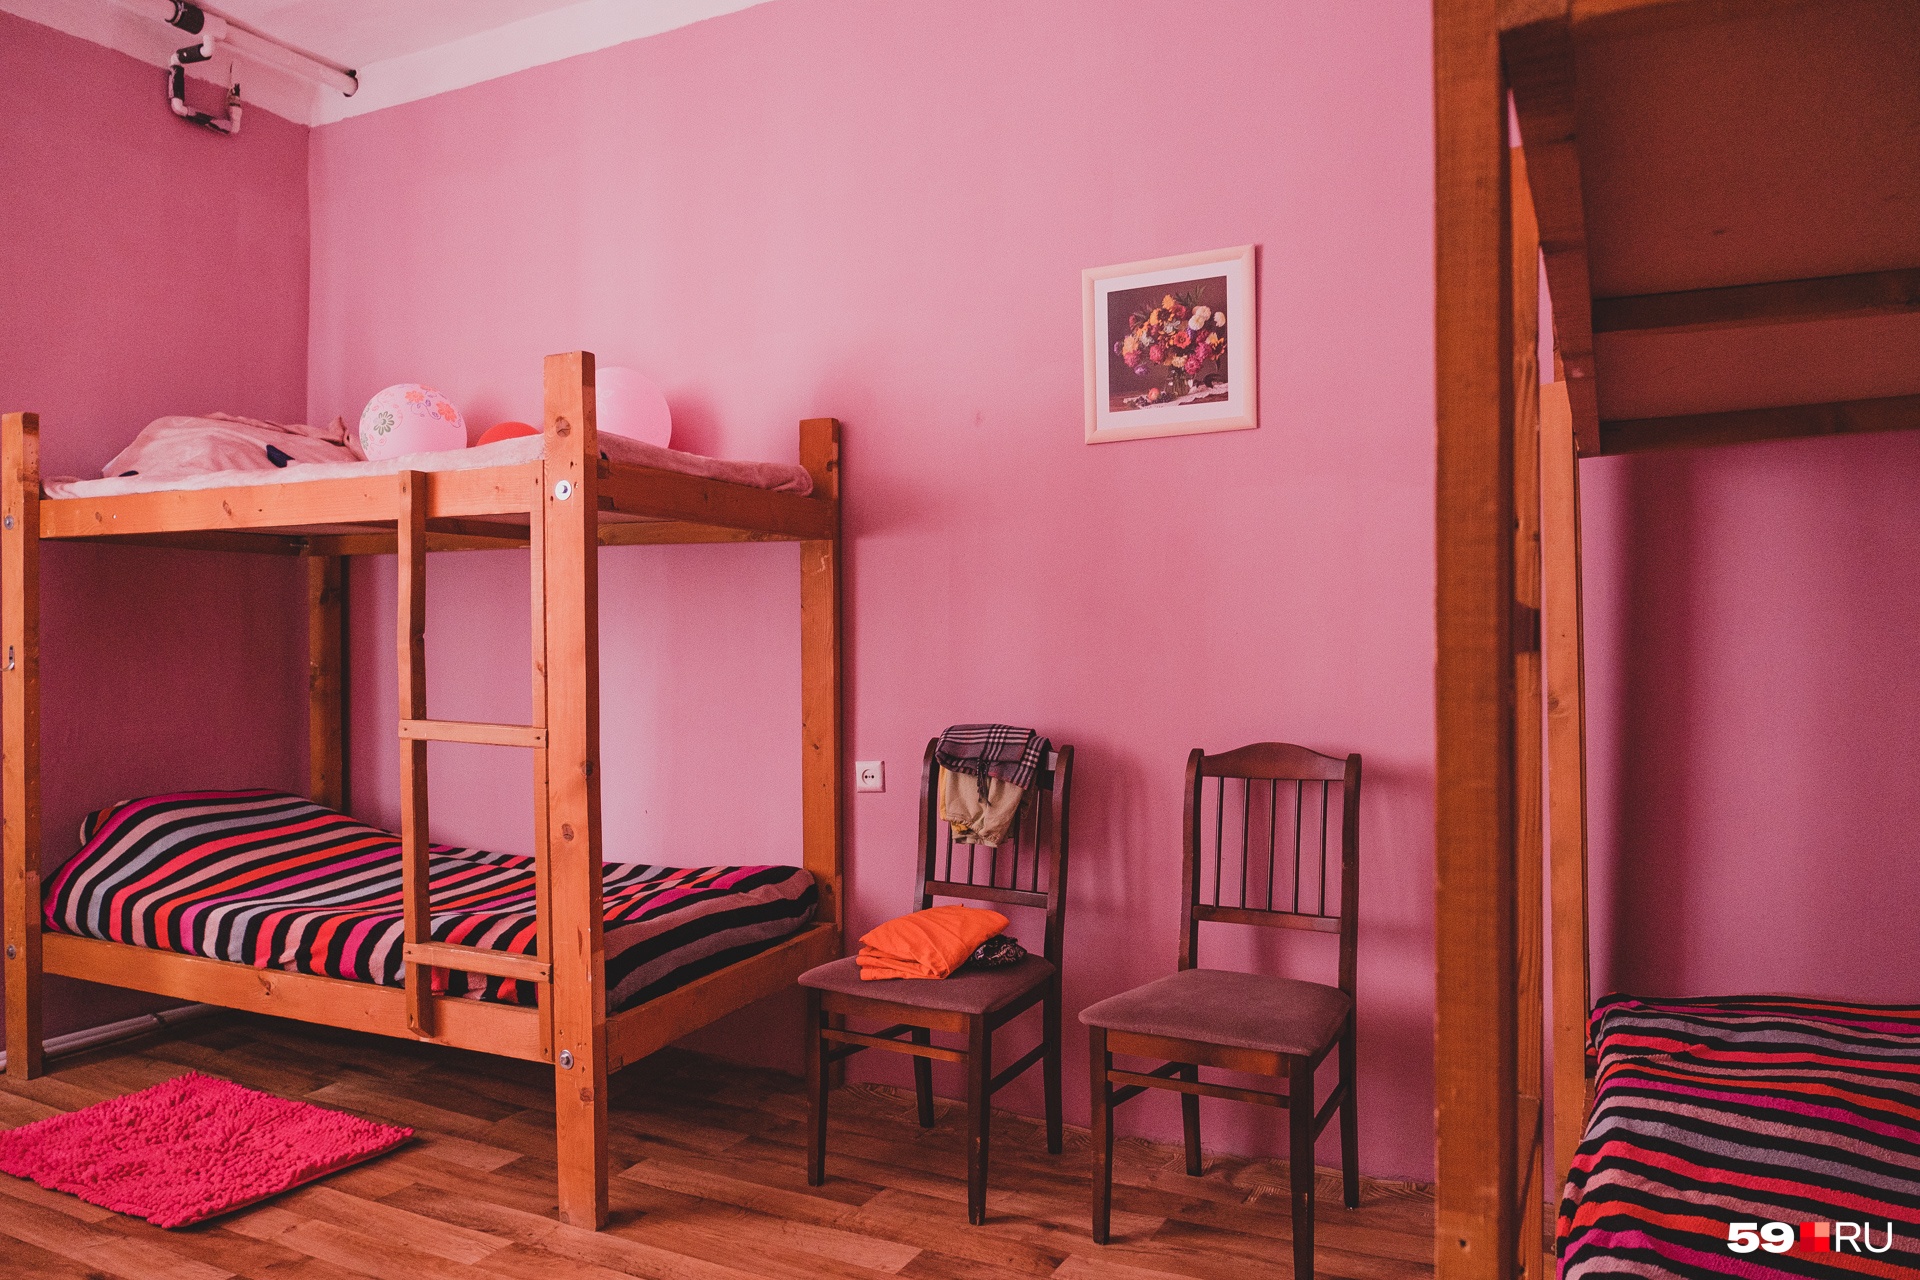 В спальнях центра — по-девичьи розовые стены, коврики, картины. Двухъярусные кровати здесь решили поставить, чтобы можно было разместить больше женщин